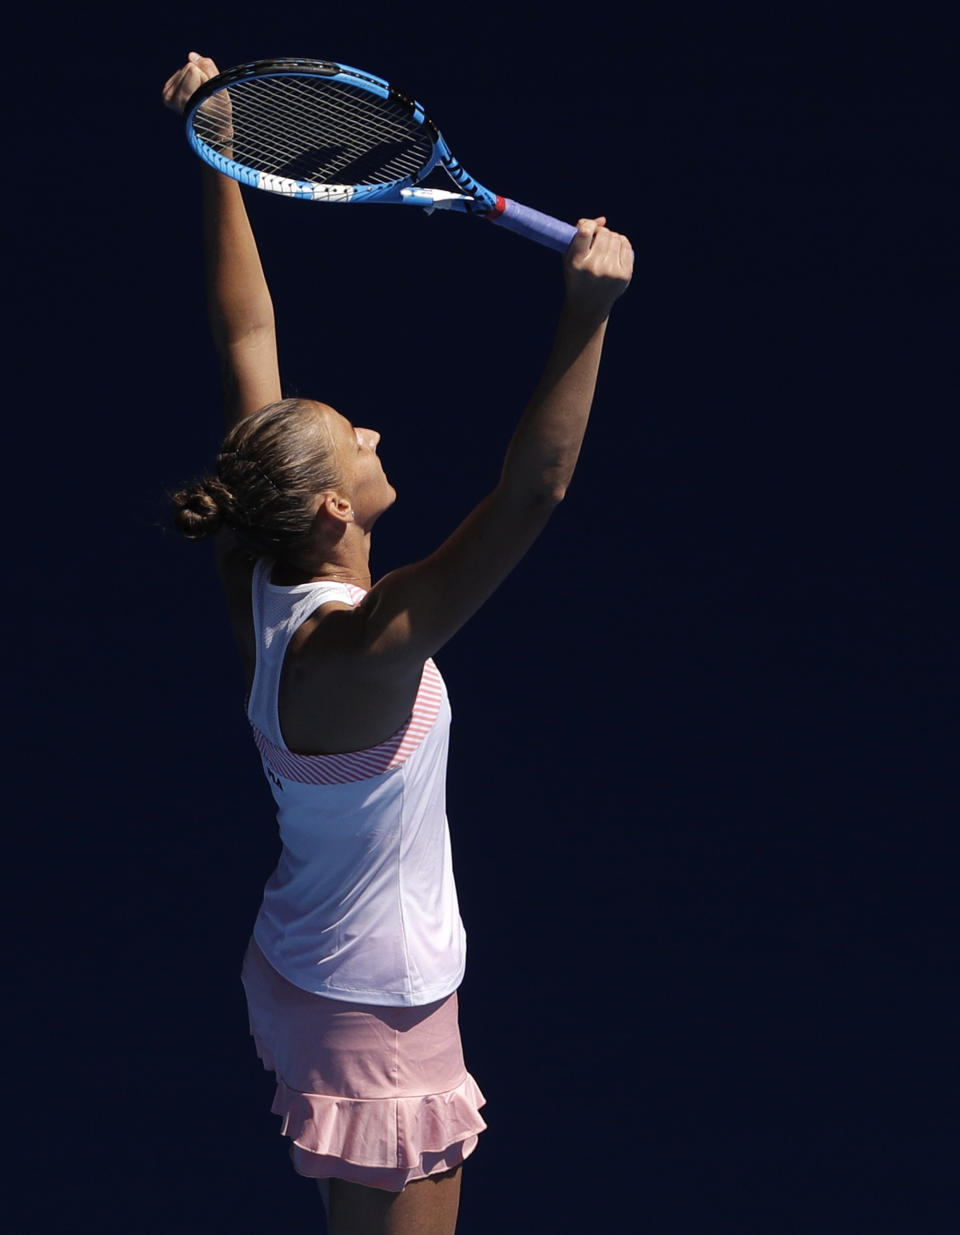 La tenista checa Karolina Pliskova celebra su victoria sobre la estadounidense Serena Williams en los cuartos de final del Abierto de Australia, en Melbourne, Australia, el 23 de enero de 2019. (AP Foto/Mark Schiefelbein)